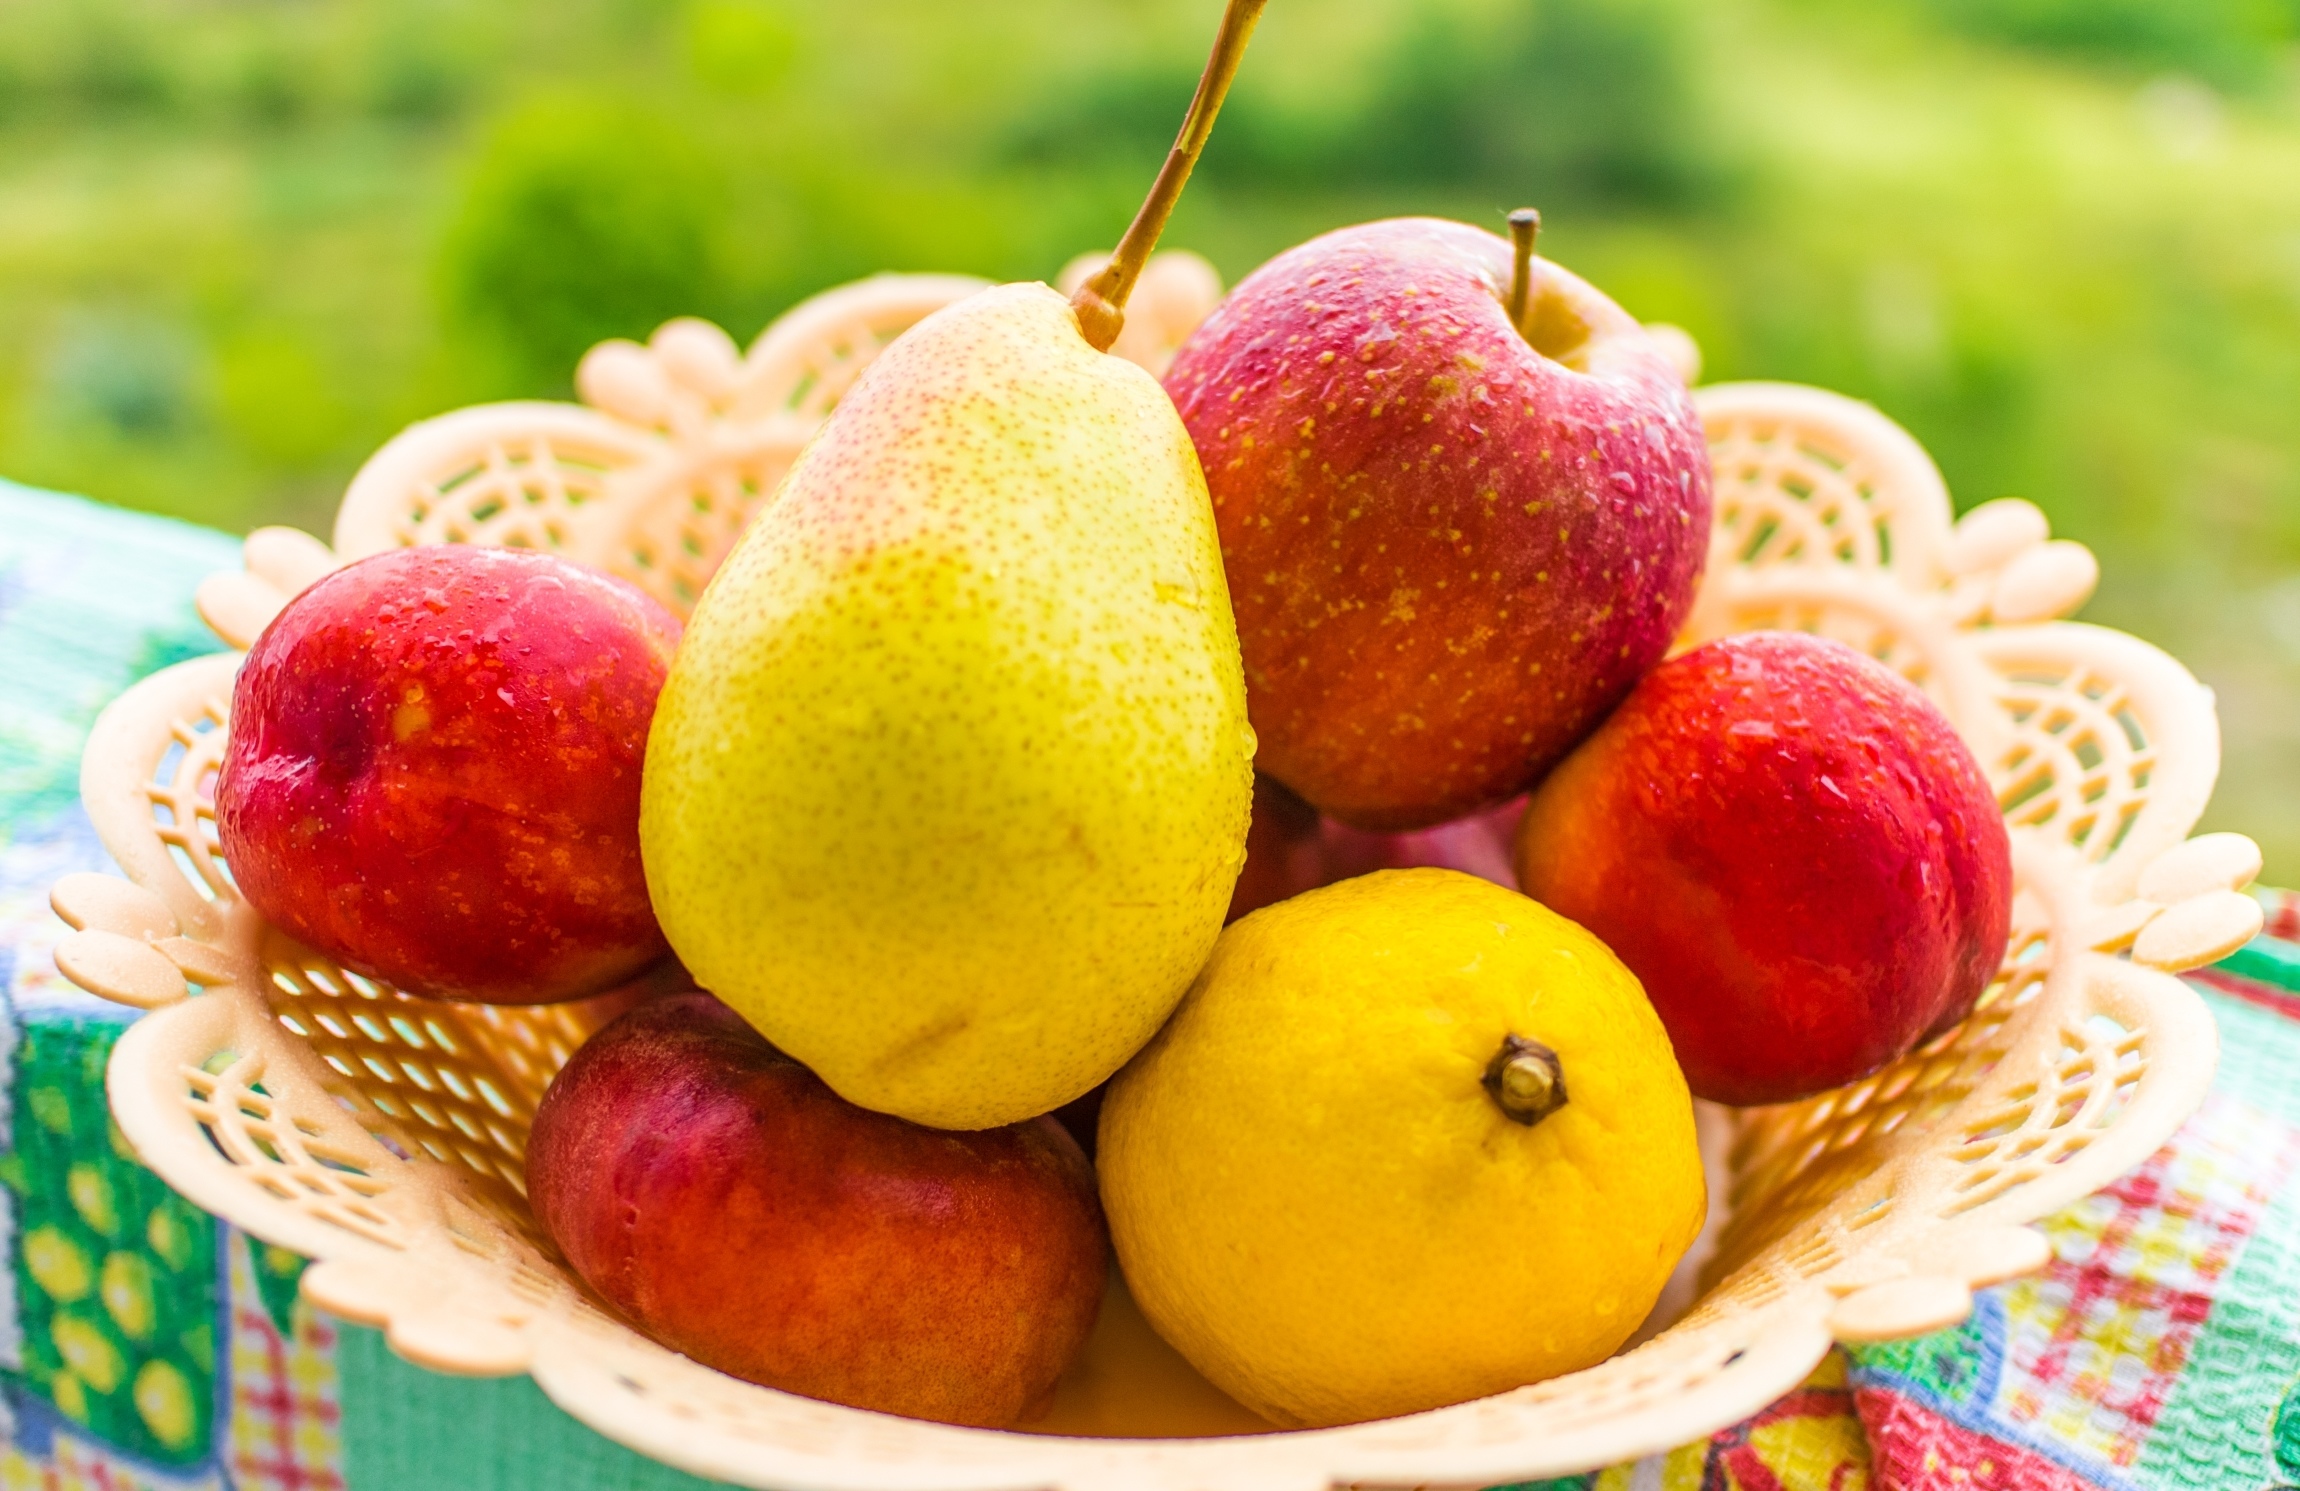 2 10 всех фруктов составляют персики. Фрукты. Летние фрукты. Красивые фрукты. Фрукты яблоки груши.